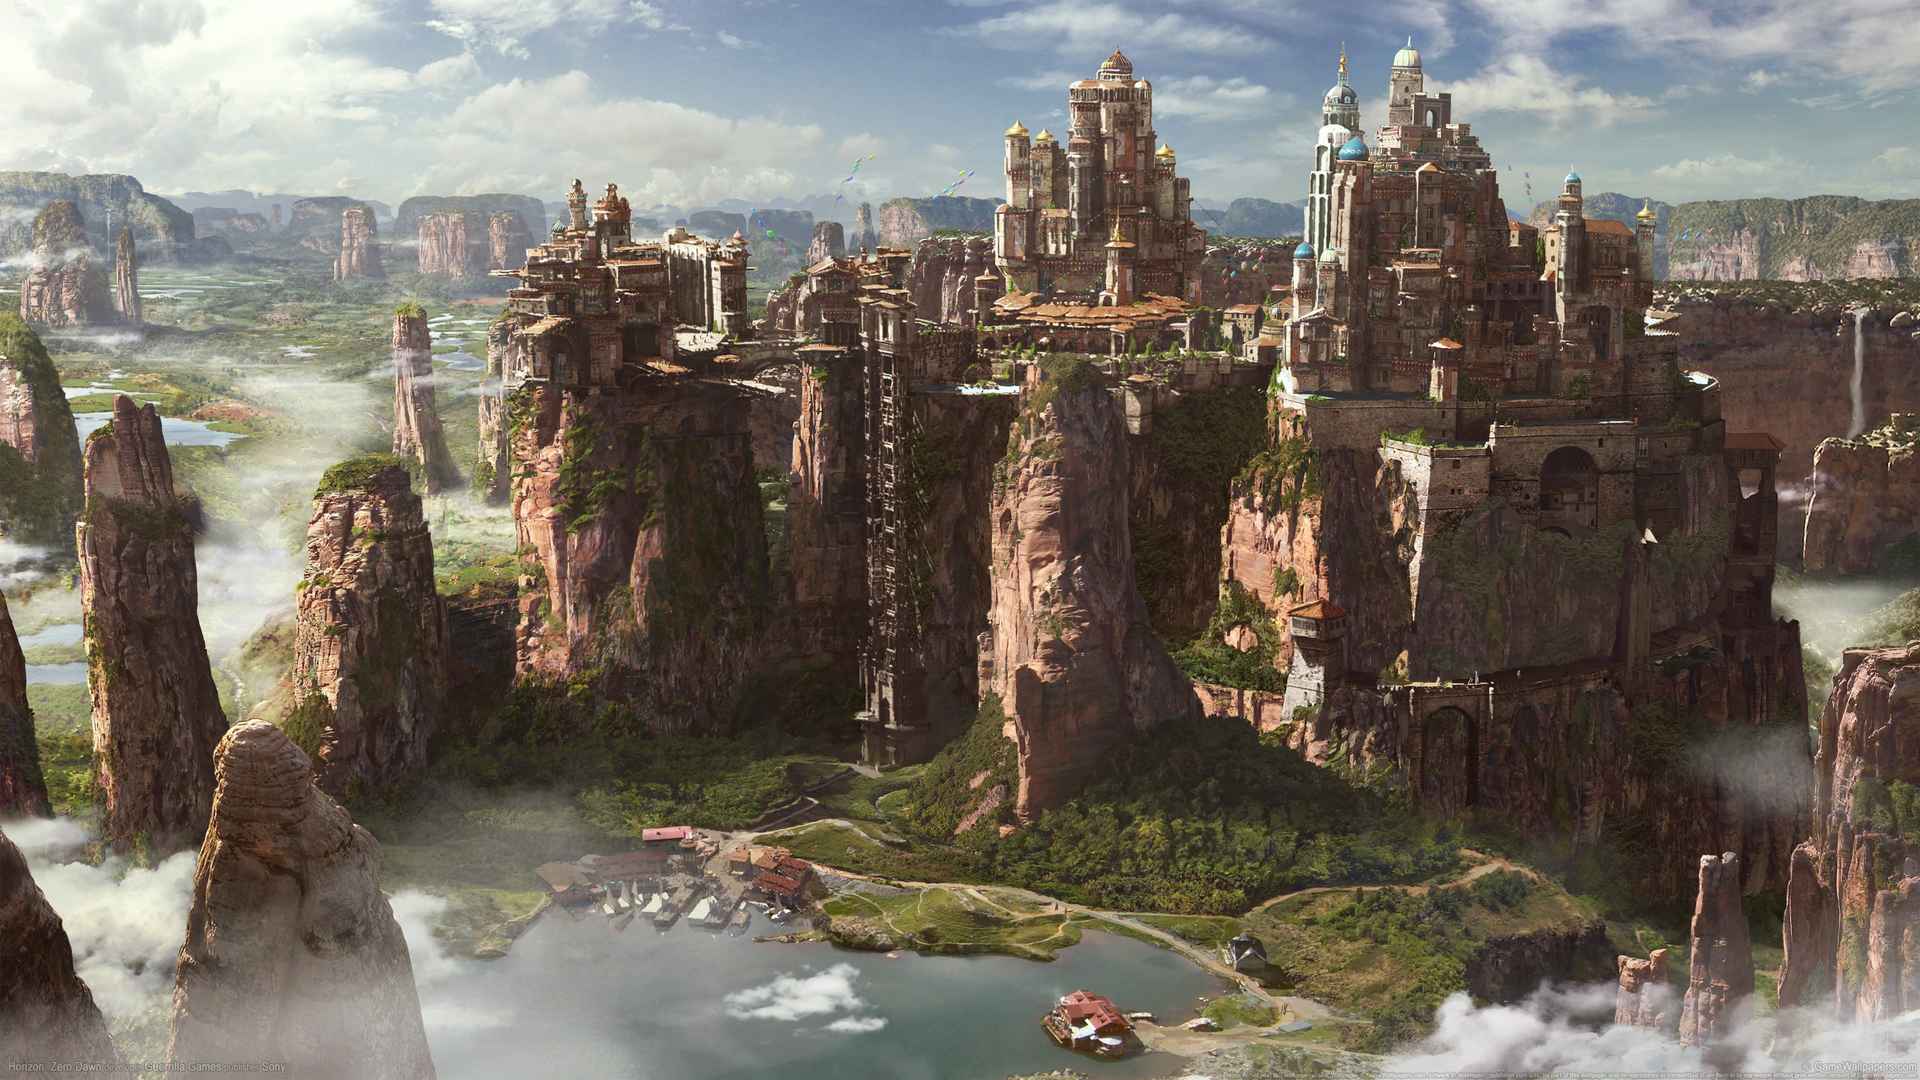 《地平线_黎明时分(Horizon_ Zero Dawn)》游戏风景城堡4k壁纸